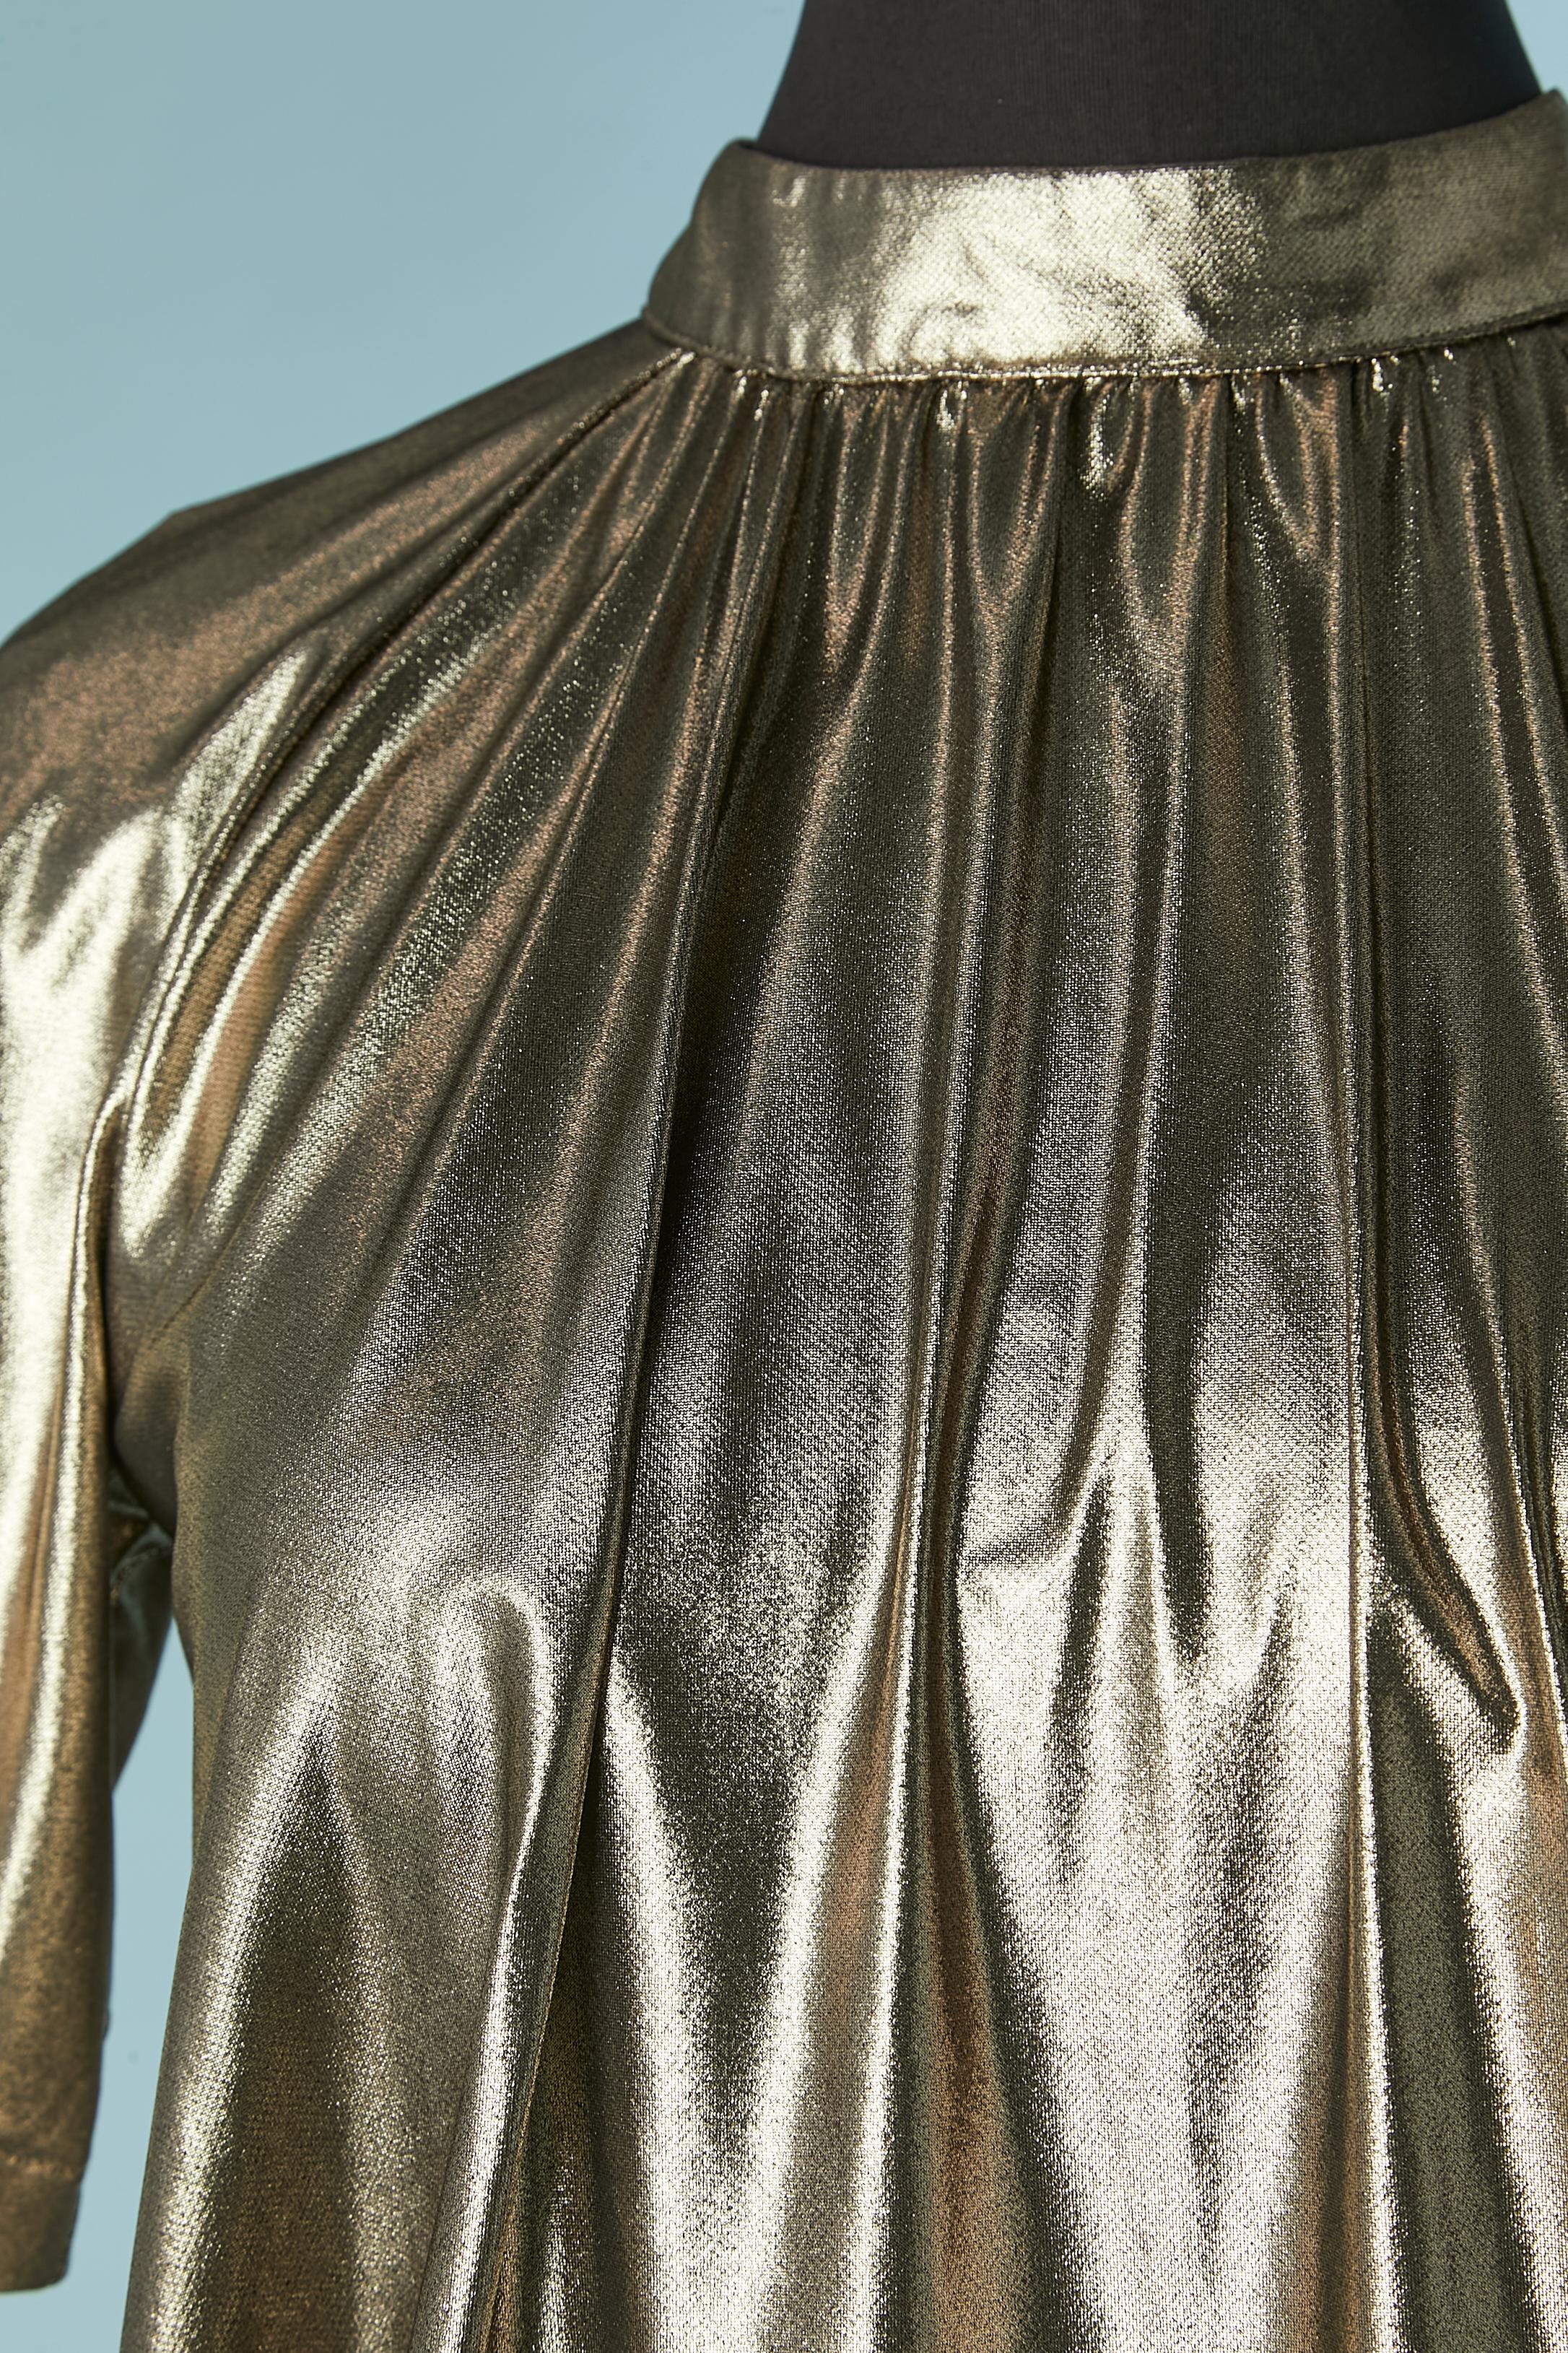 Mini robe de cocktail en jersey lamé or avec fermeture à 2 boutons au milieu du dos. Tissu principal : polyester 
Hologramme d'authenticité 
TAILLE M 